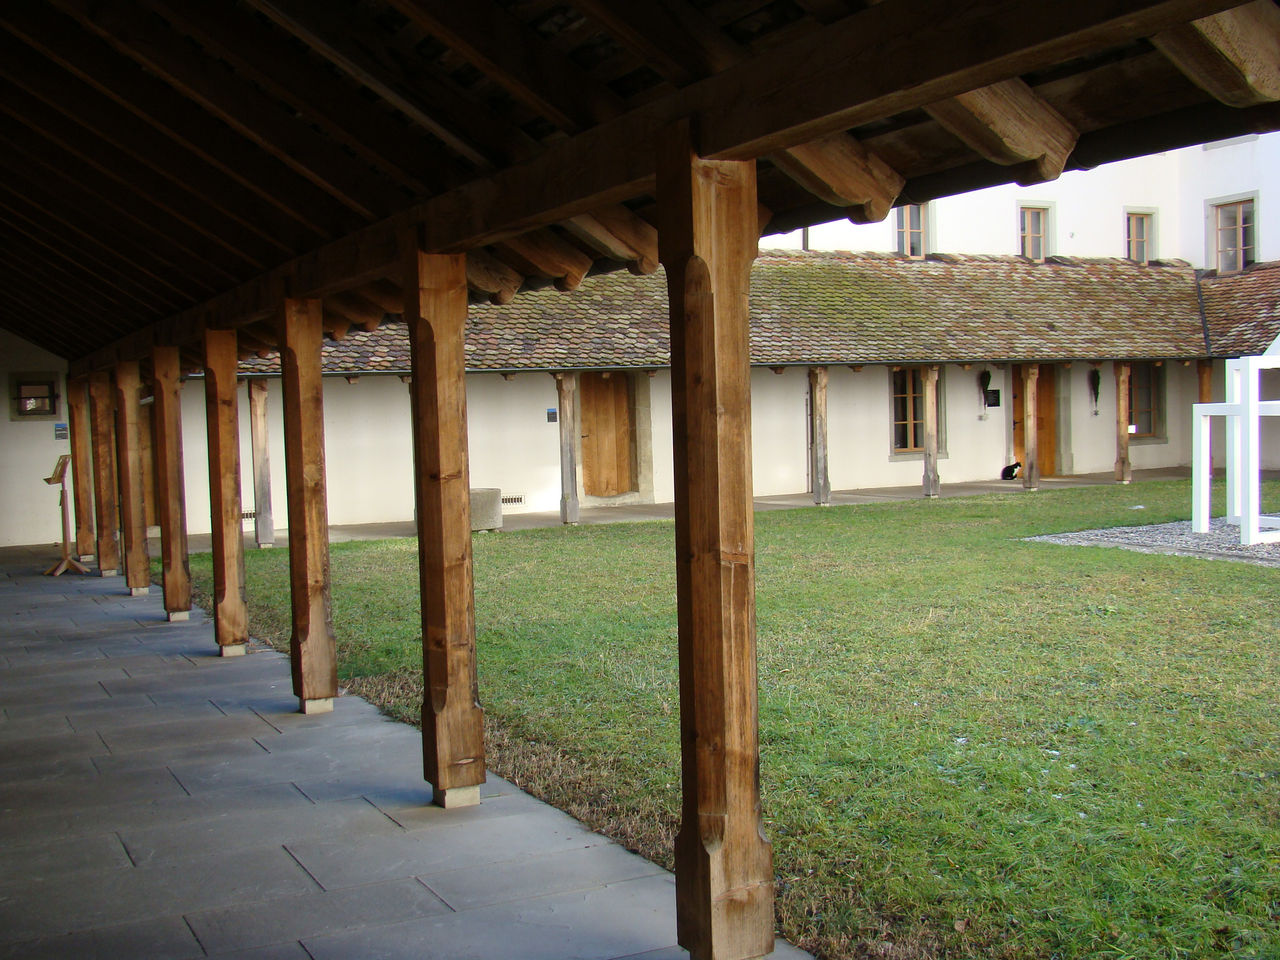 Innenhof des Klosters mit Vordach, welches von vielen Holzsäulen gestützt wird